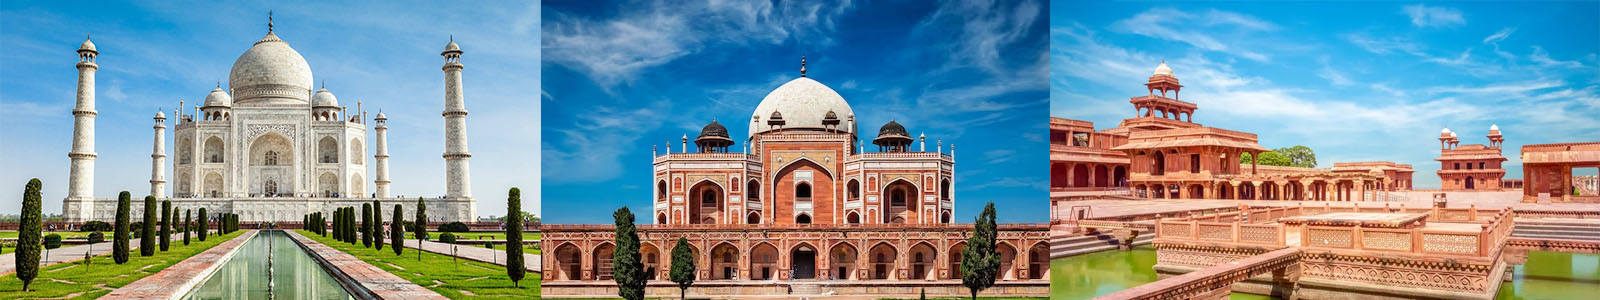 Agra, Taj Mahal with Fatehpur Sikri Day Trip from Delhi